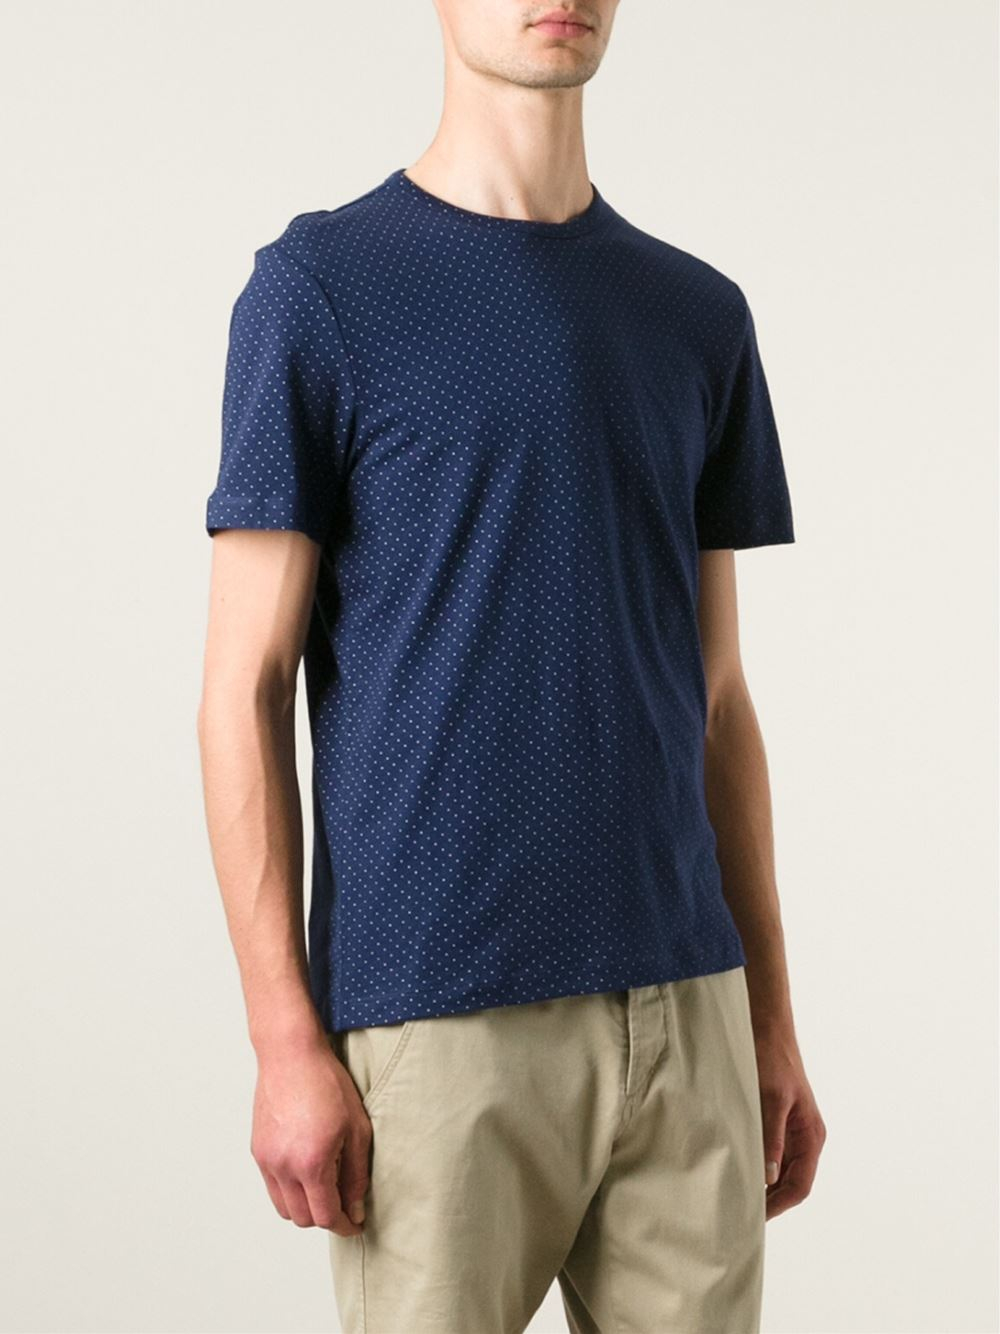 Lyst - Michael Kors Polka Dot T-Shirt in Blue for Men